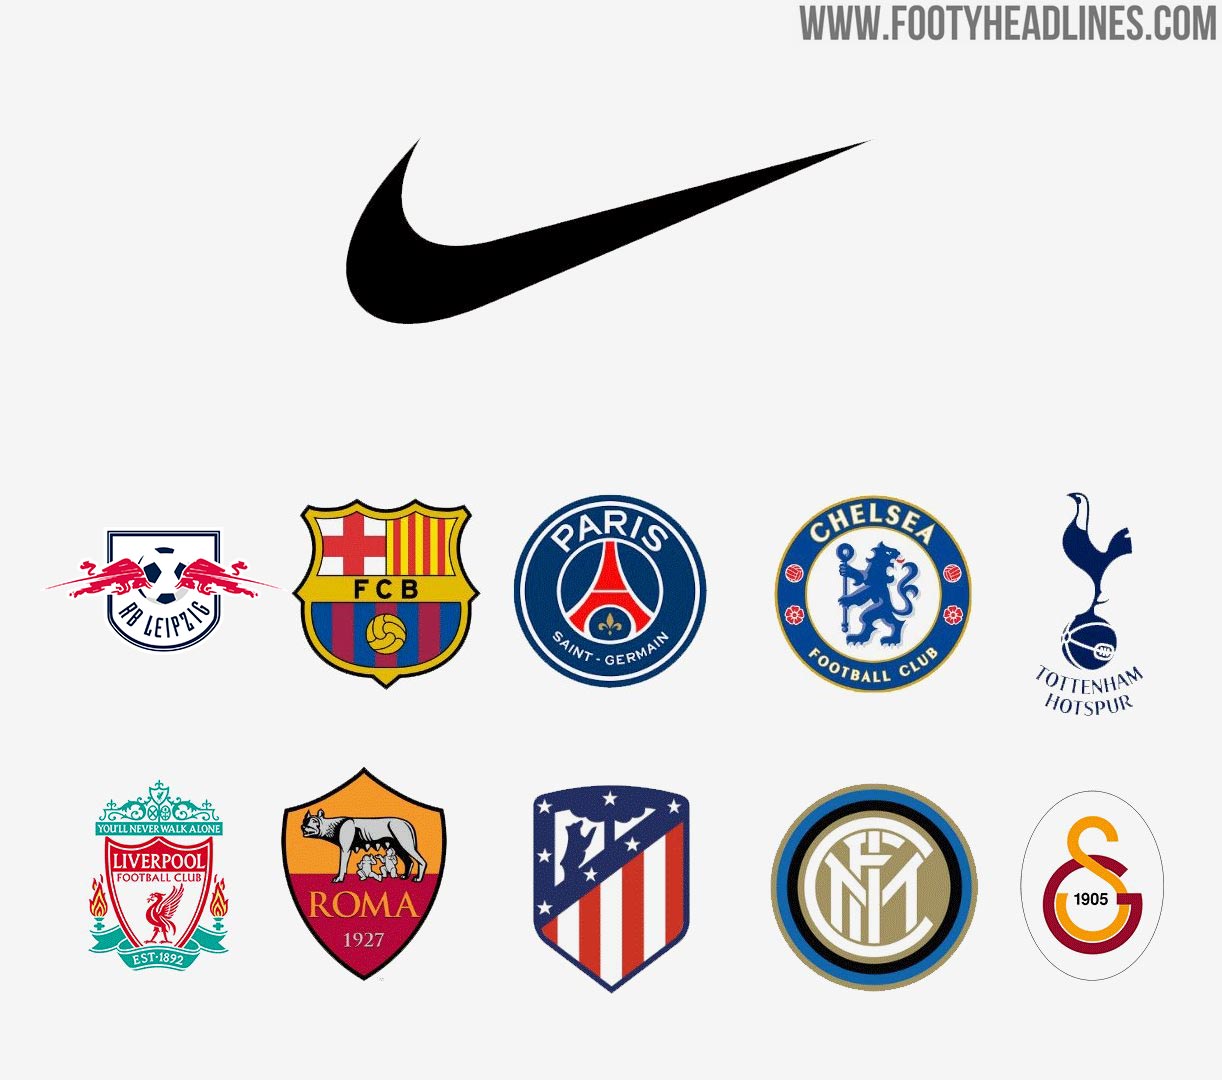 explosie leveren gevechten Adidas, Nike & Puma - The Top Clubs Of Each Brand In 2020-21 - Footy  Headlines